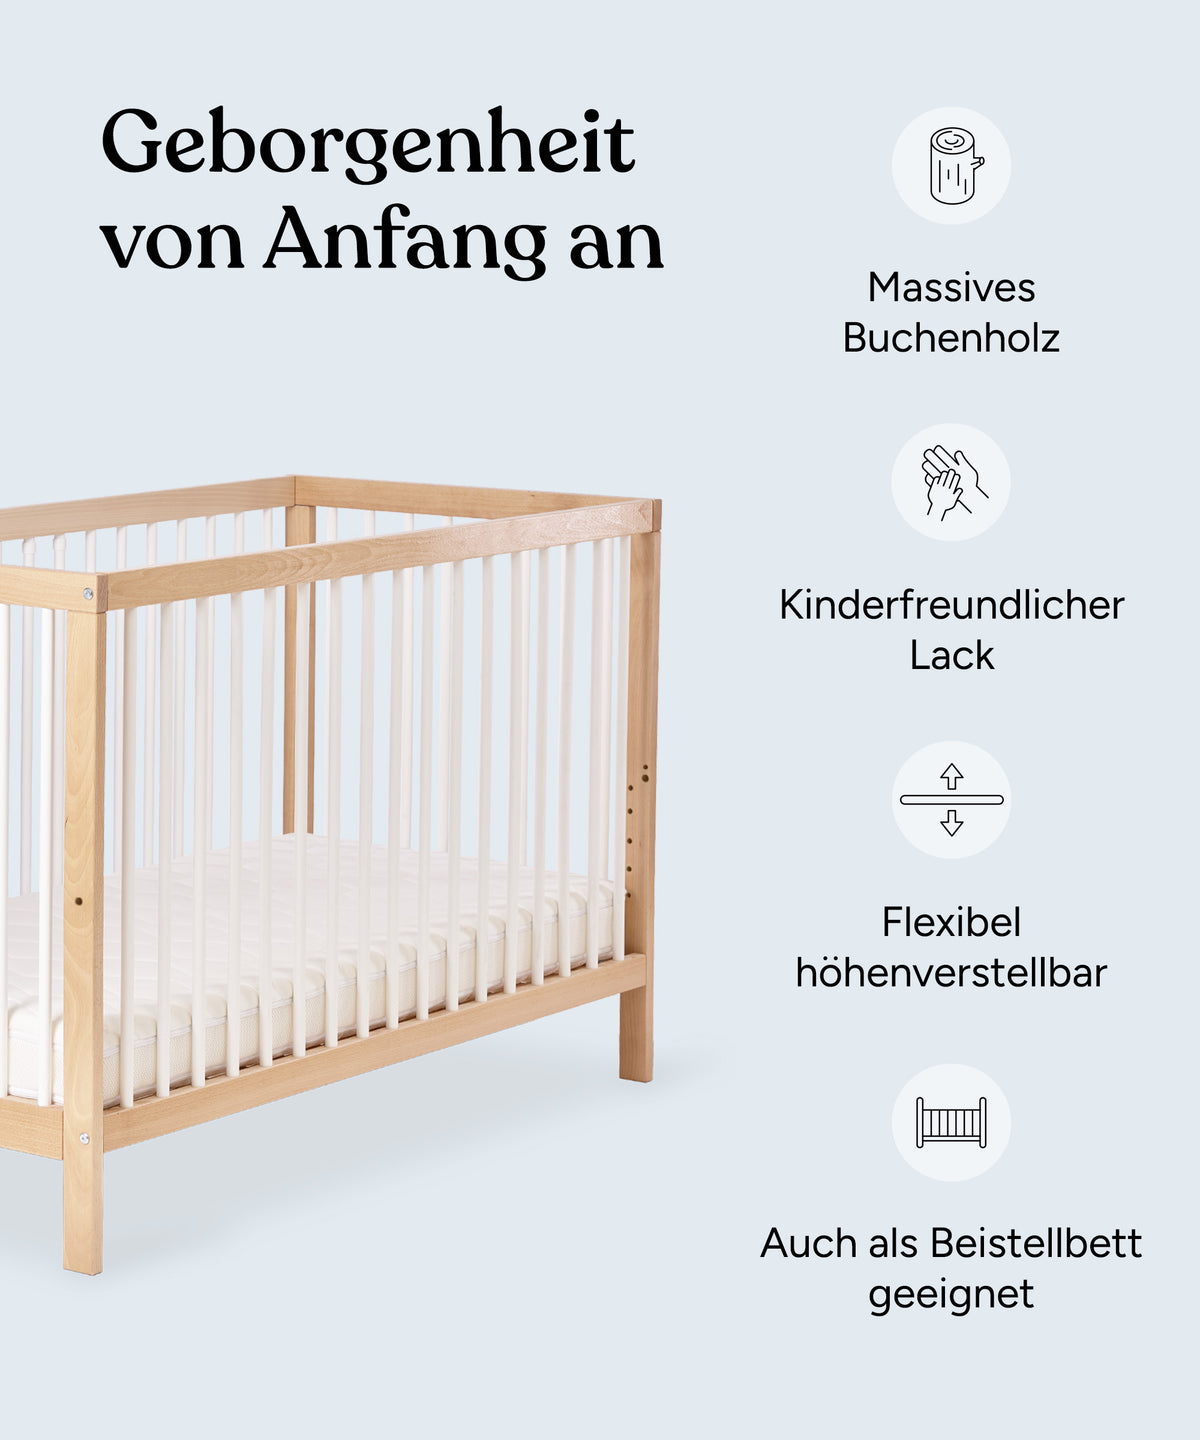 Geborgenheit von Anfang an. Vorteile des Babybetts: Massives Buchenholz, kinderfreundlicher Lack, flexibel höhenverstellbar, auch als Beistellbett geeignet.